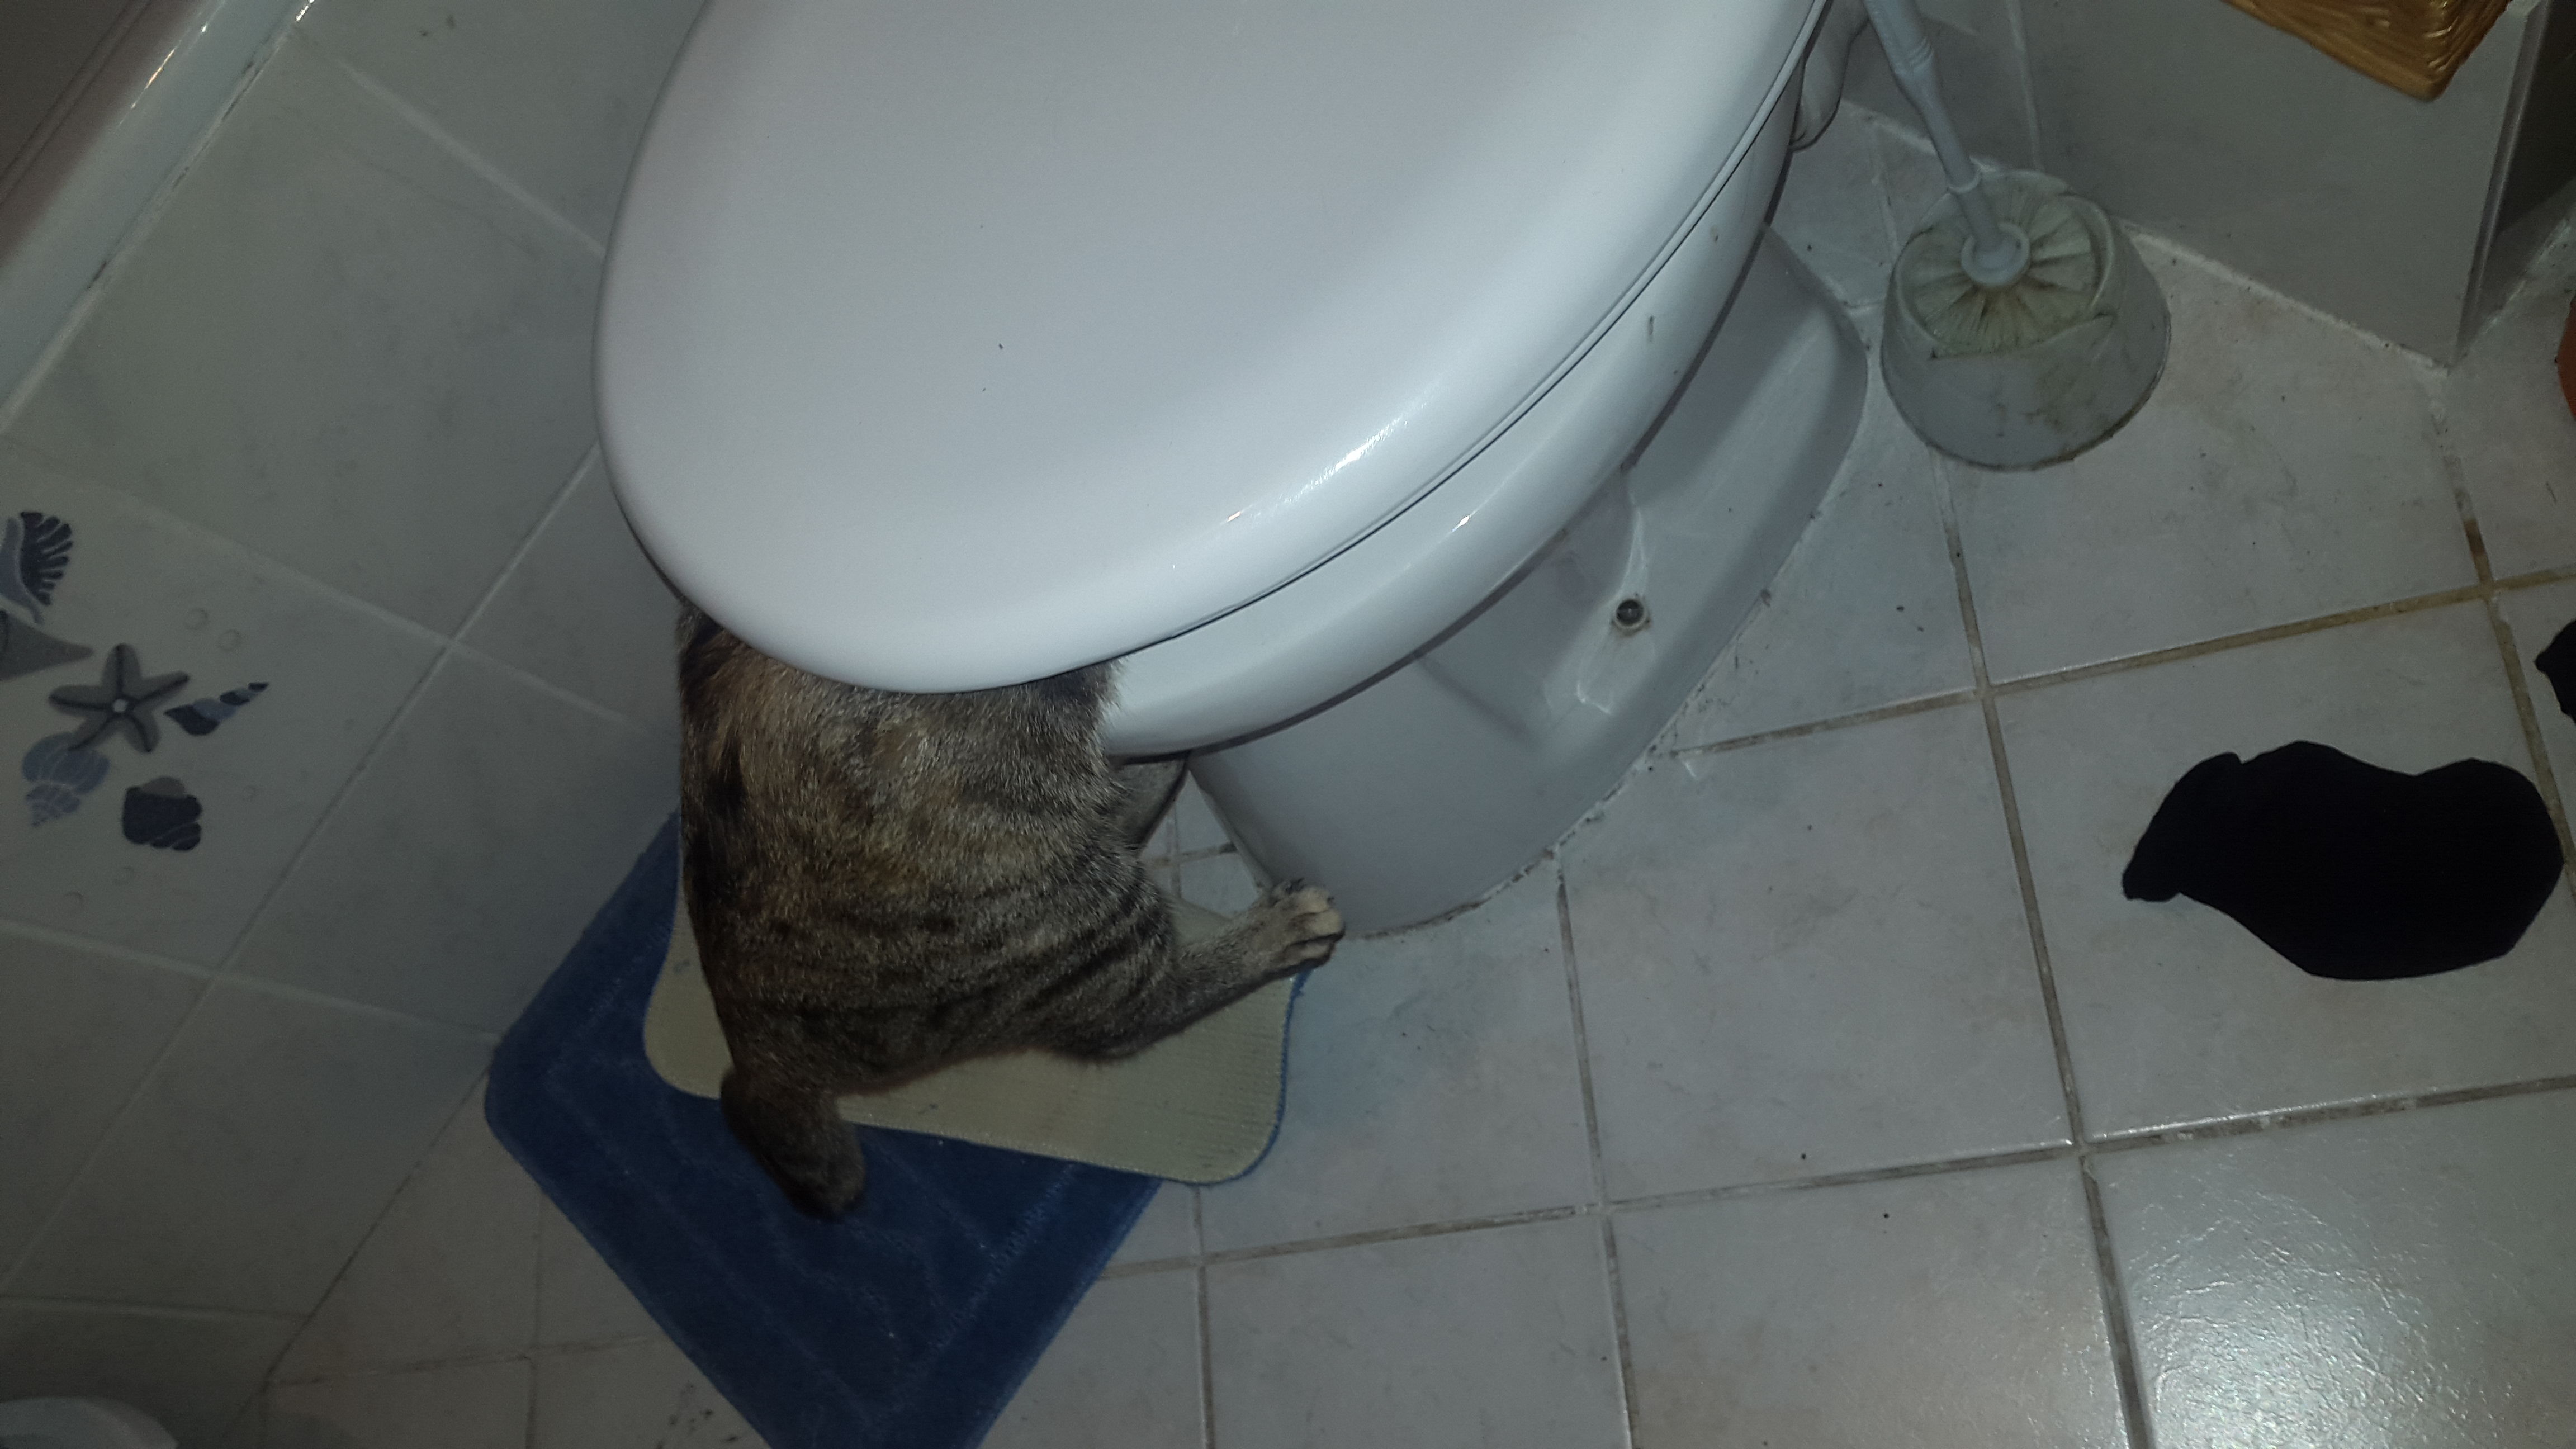 Katze trinkt aus Toilette?